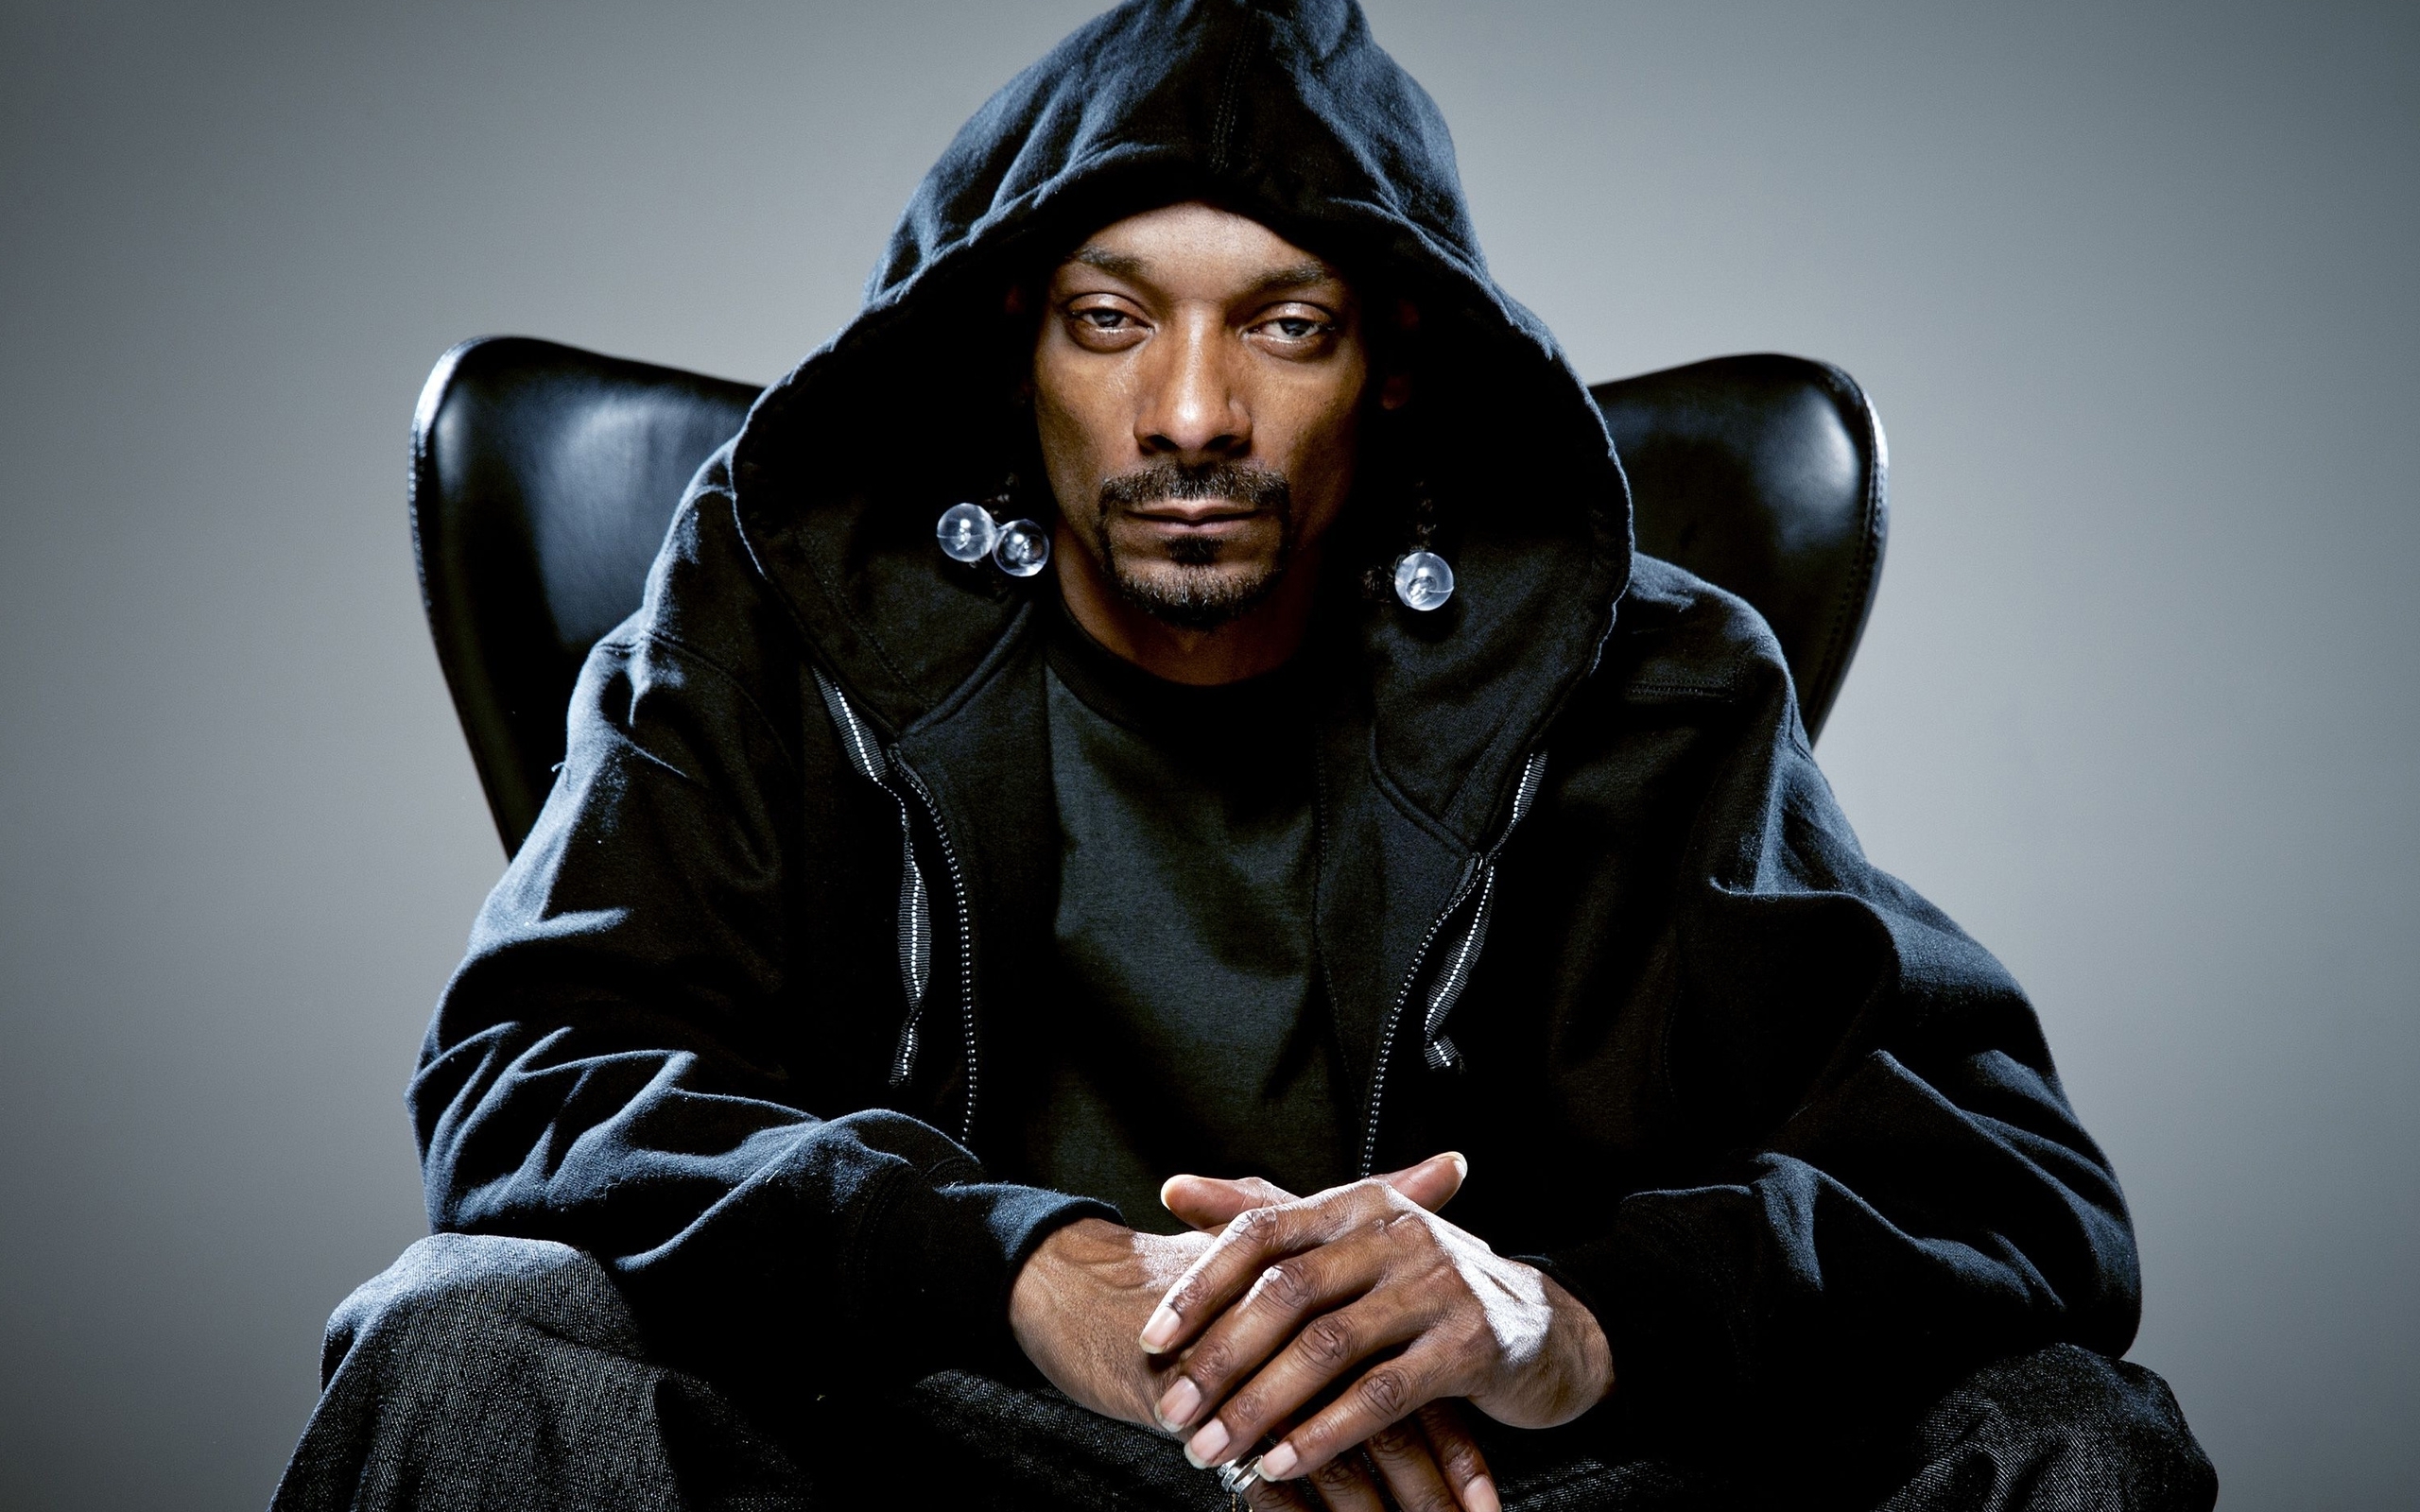 Snoop Dogg Wallpaper 1080p Ns5747y 4usky